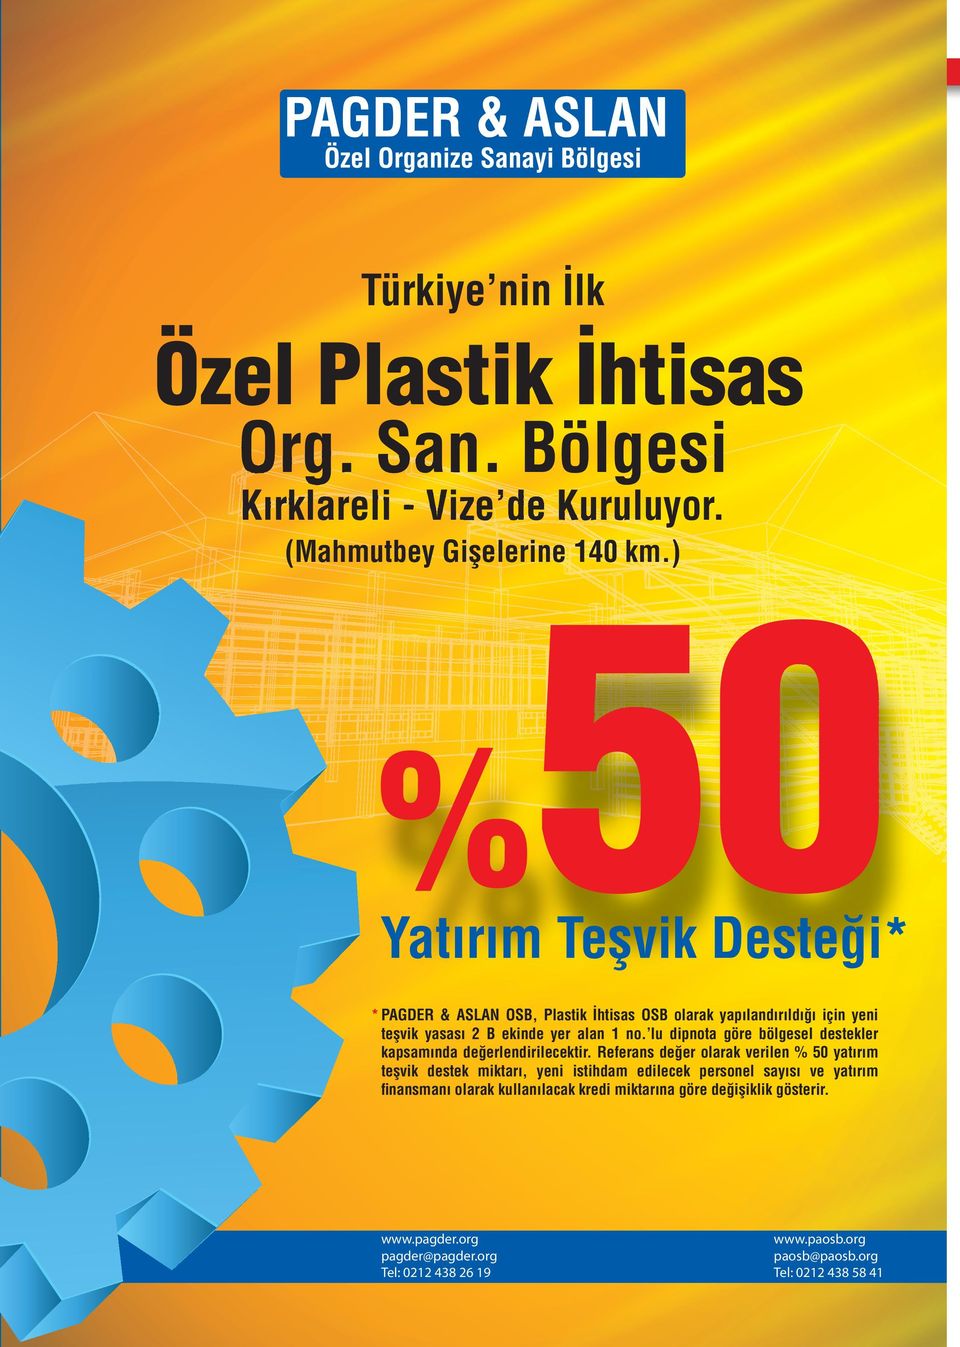 ) 50 % Yatırım Teşvik Desteği* * PAGDER & ASLAN OSB, Plastik İhtisas OSB olarak yapılandırıldığı için yeni teşvik yasası 2 B ekinde yer alan 1 no.